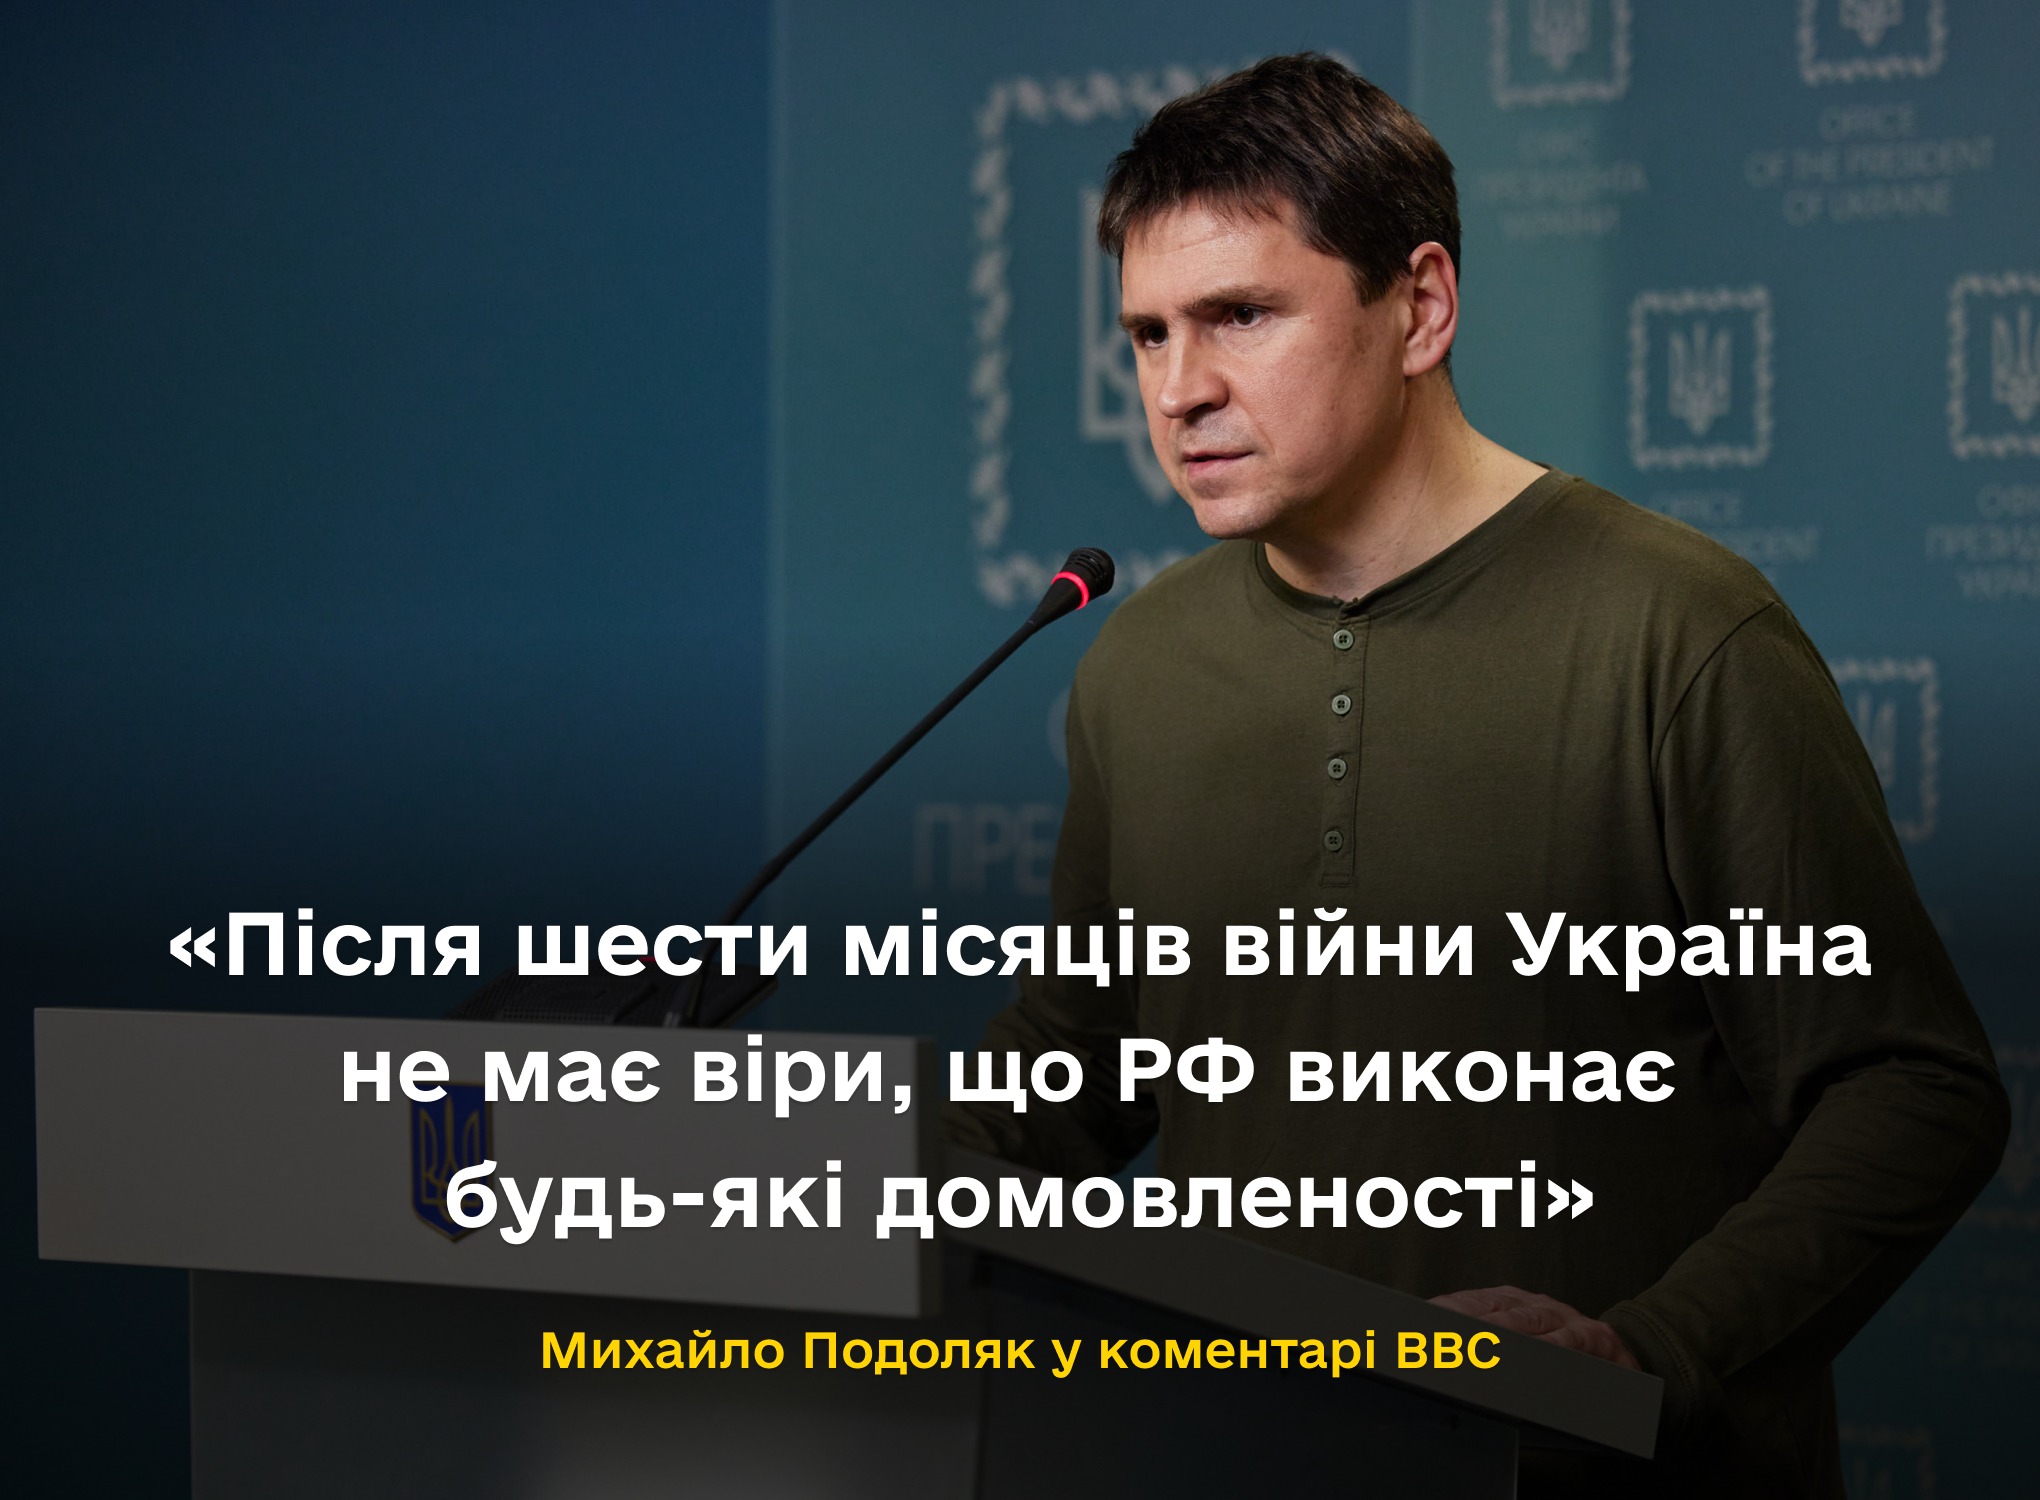 Після шести місяців війни Україна не має віри, що РФ виконає будь-які домовленості – Михайло Подоляк